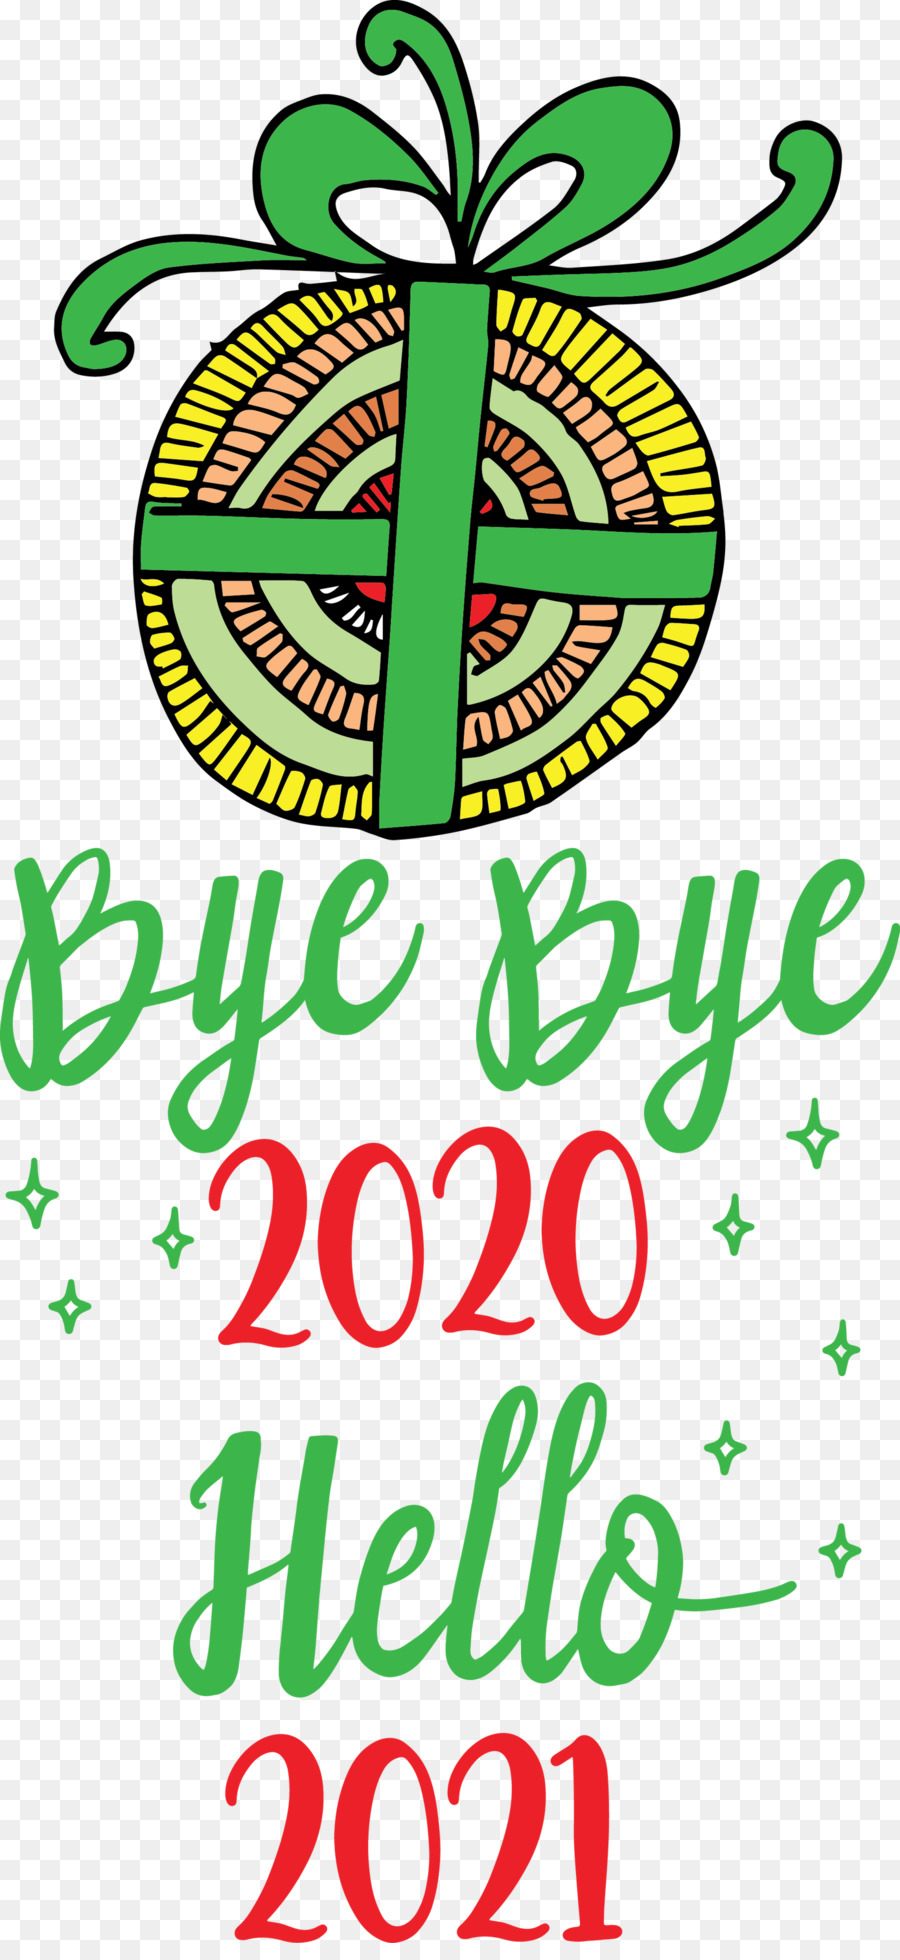 Chào năm 2021, tạm biệt năm 2020 - 